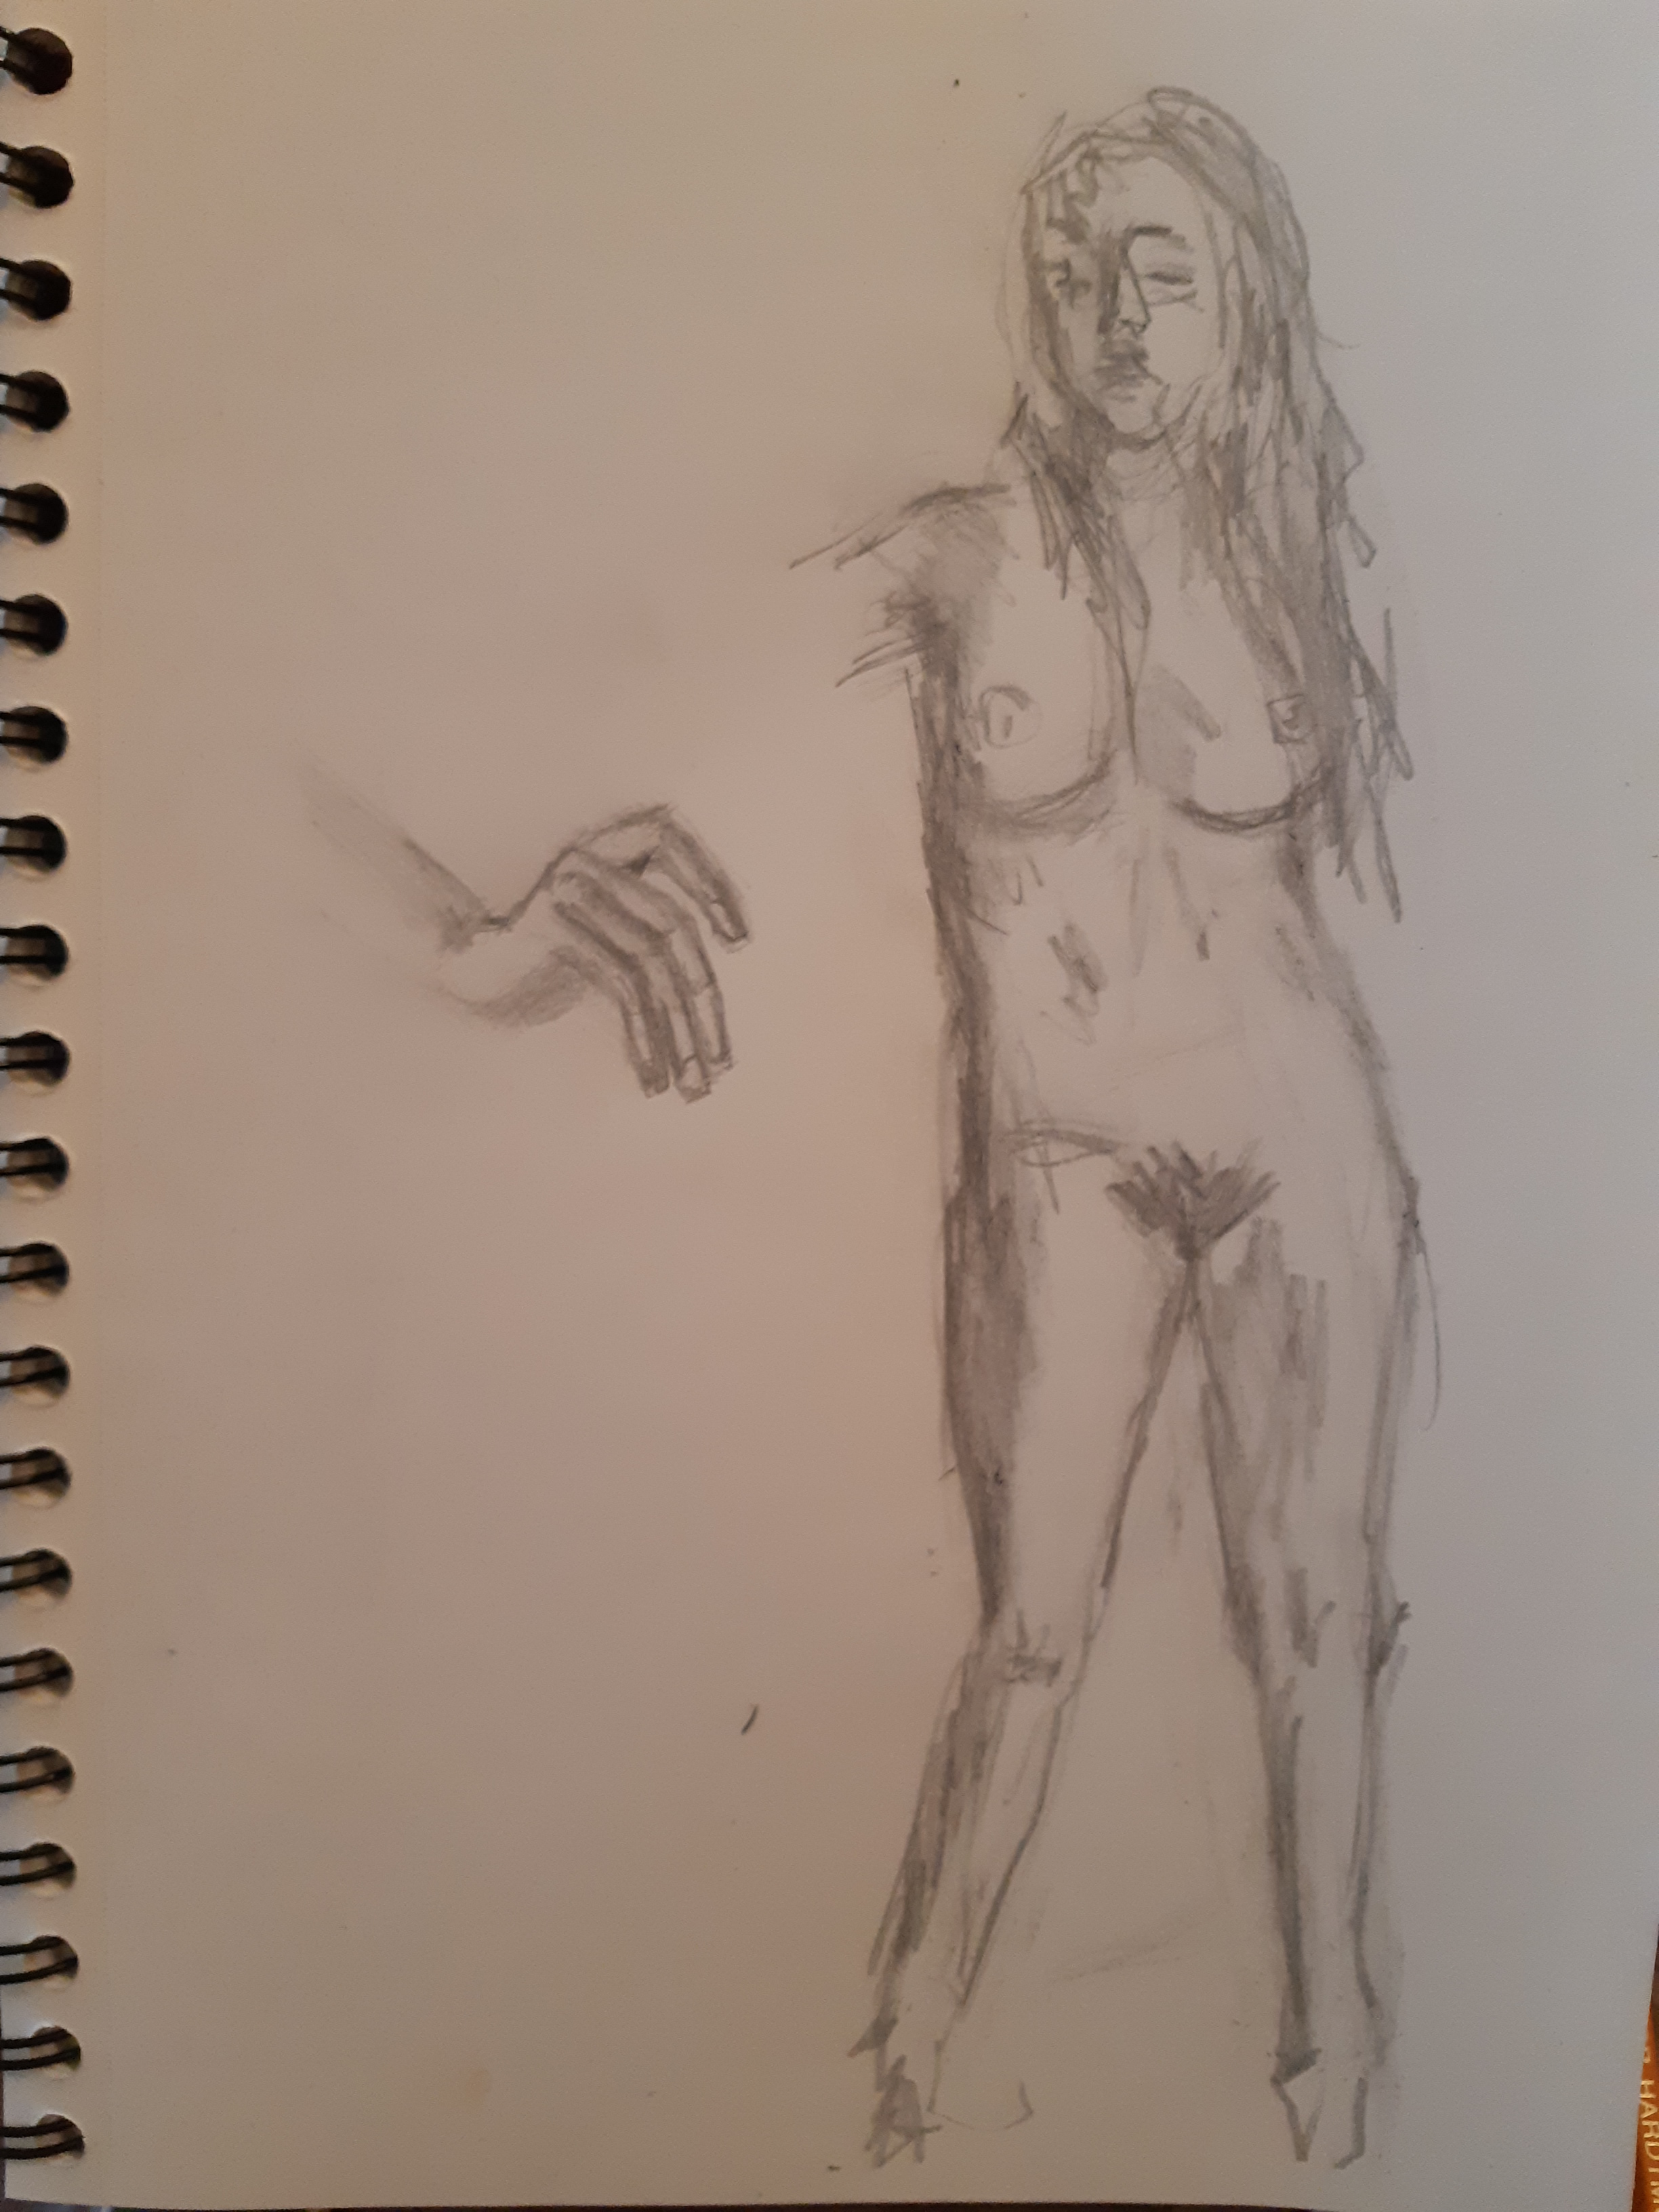  Composition femme face Ã©tude de main graphite sur papier  cours de dessin 